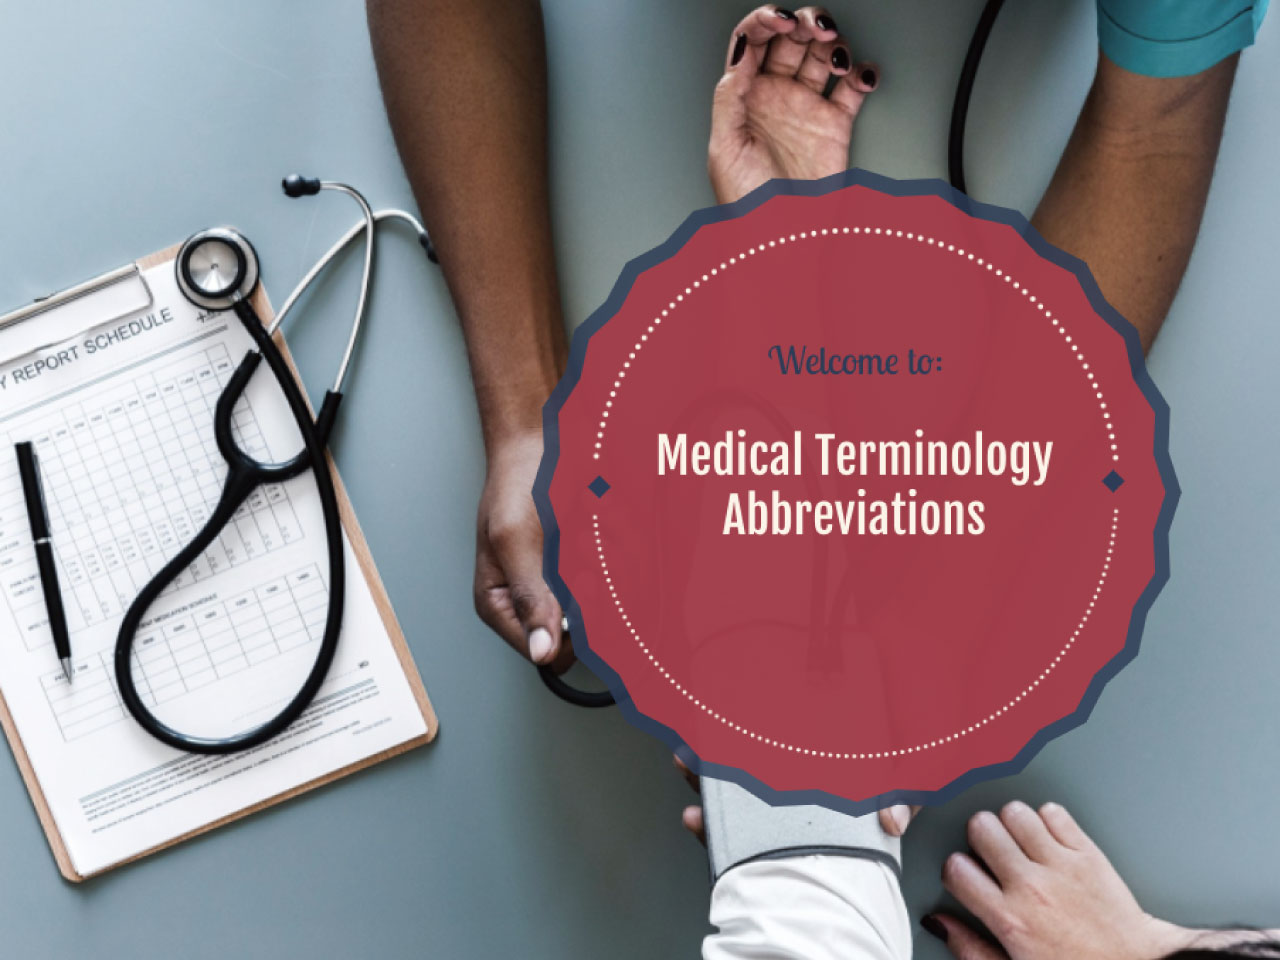 Medical Terminology Abbreviations